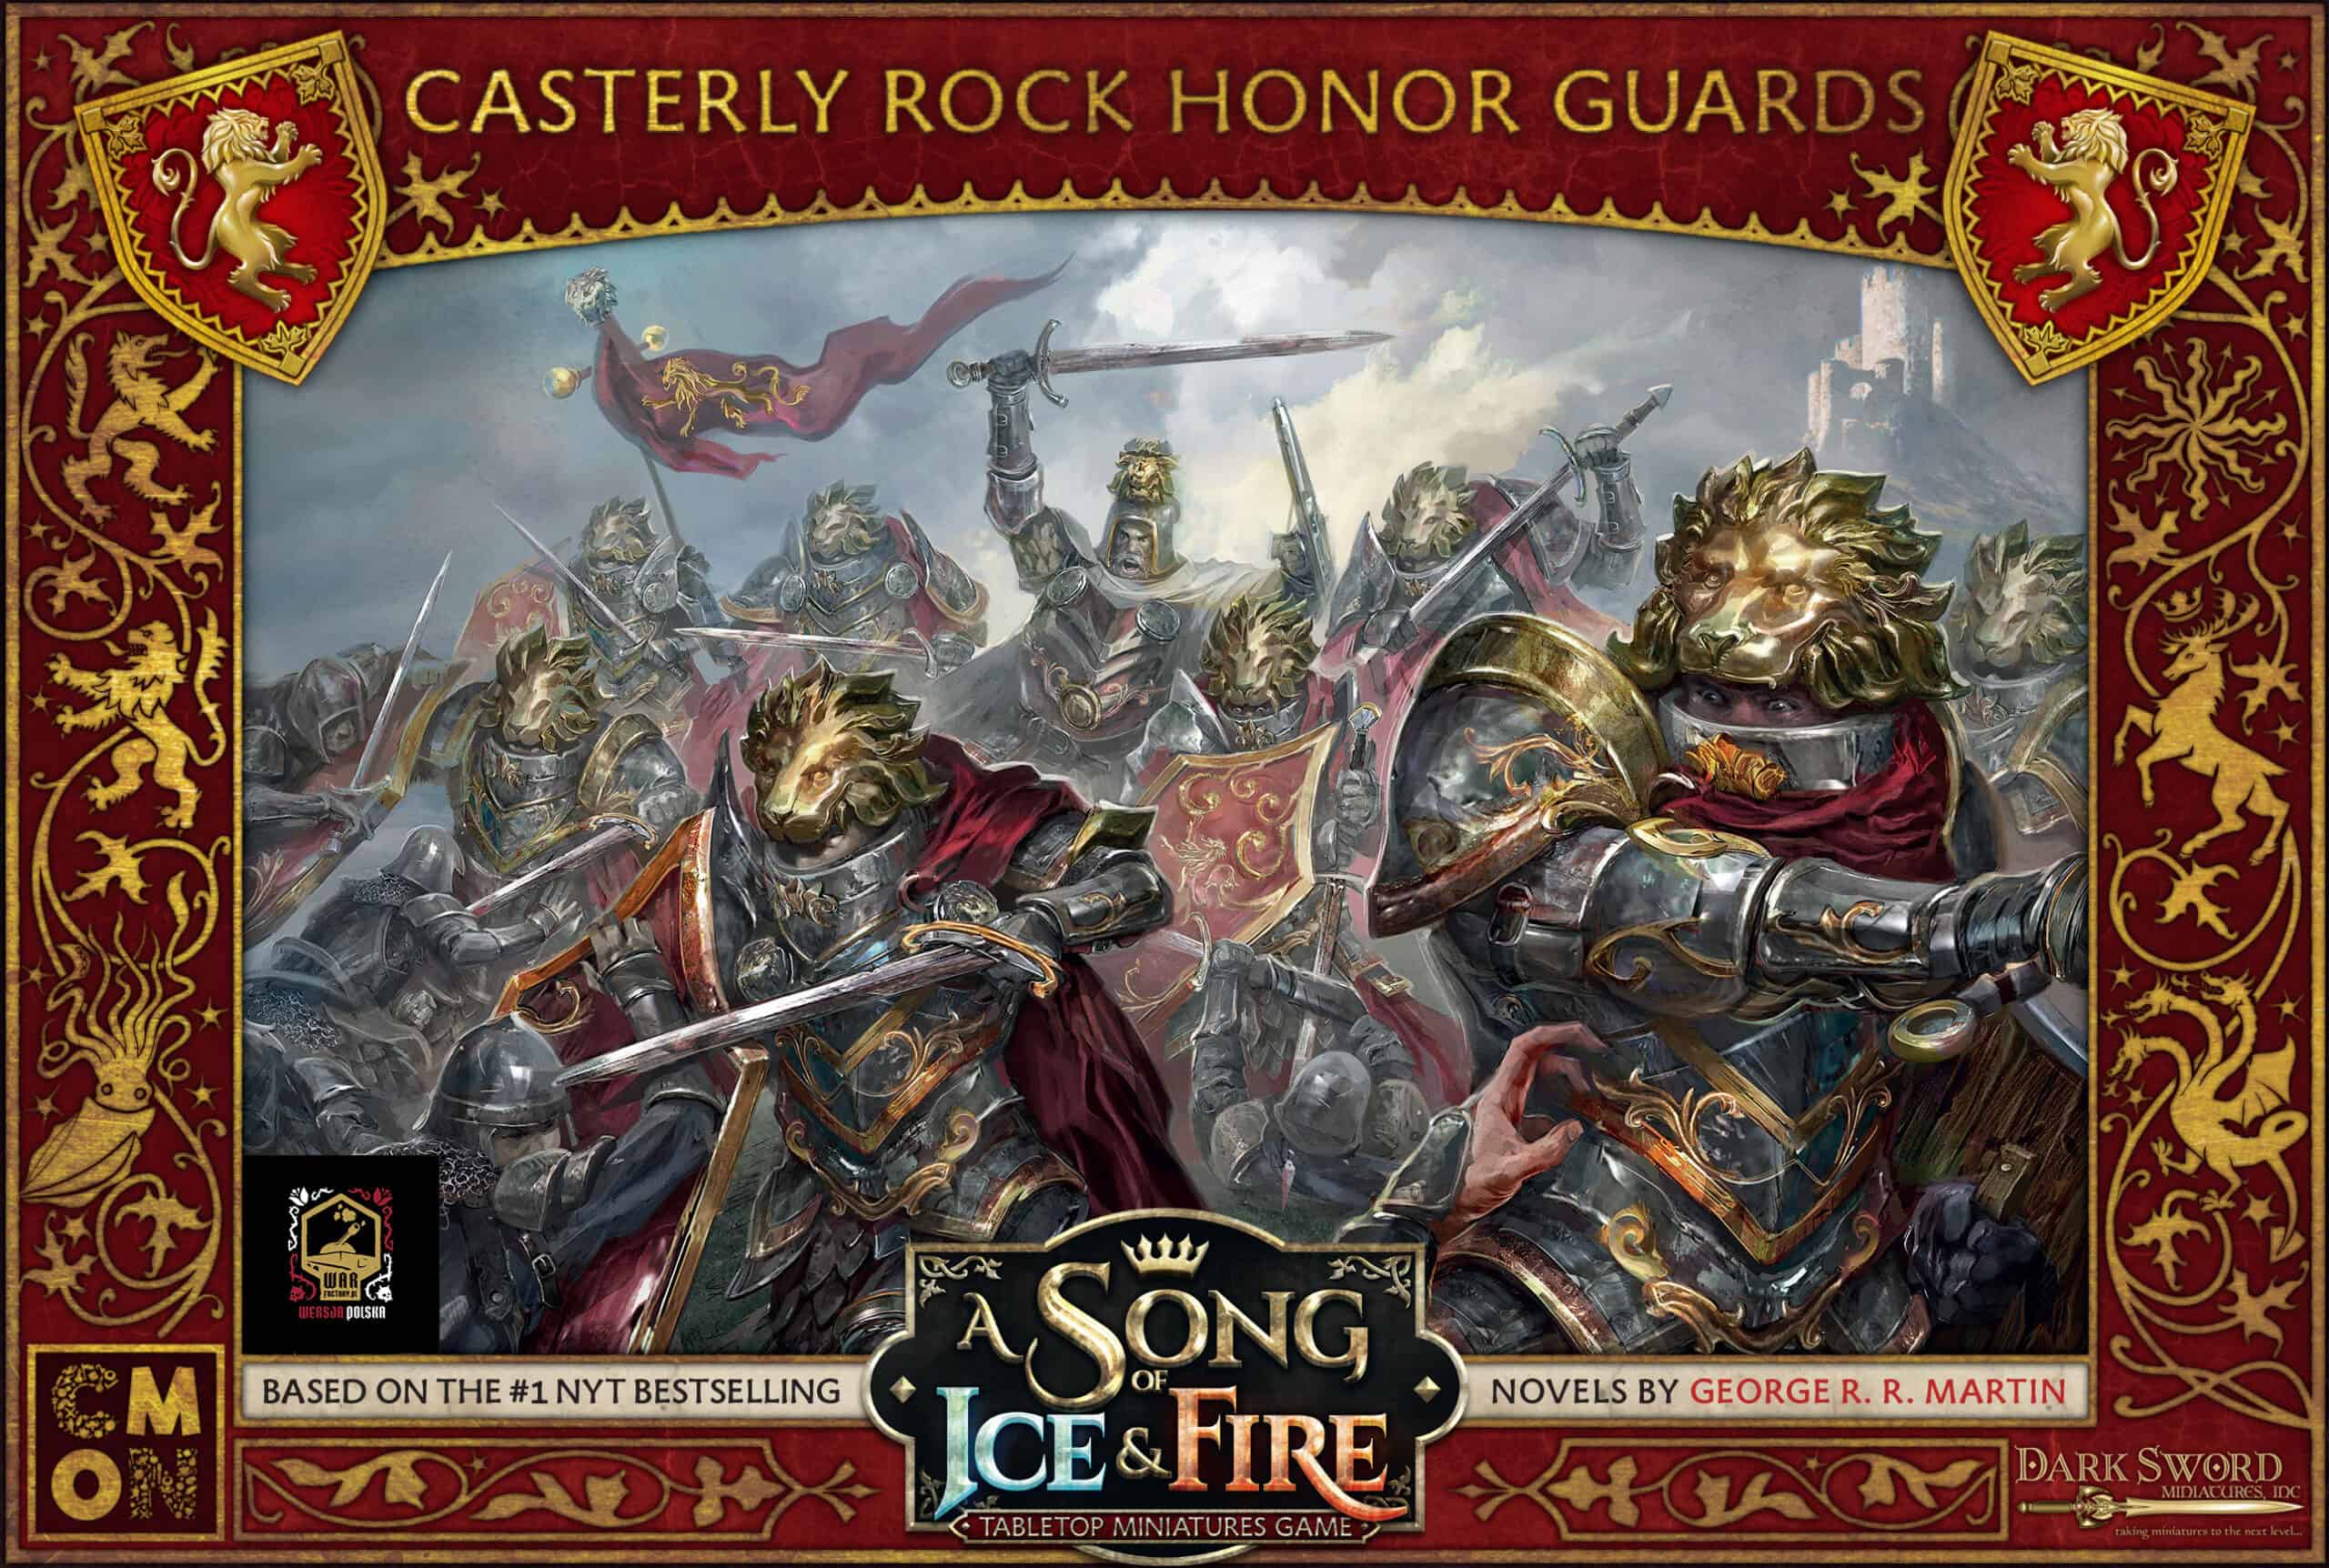 Gwardia Honorowa Casterly Rock